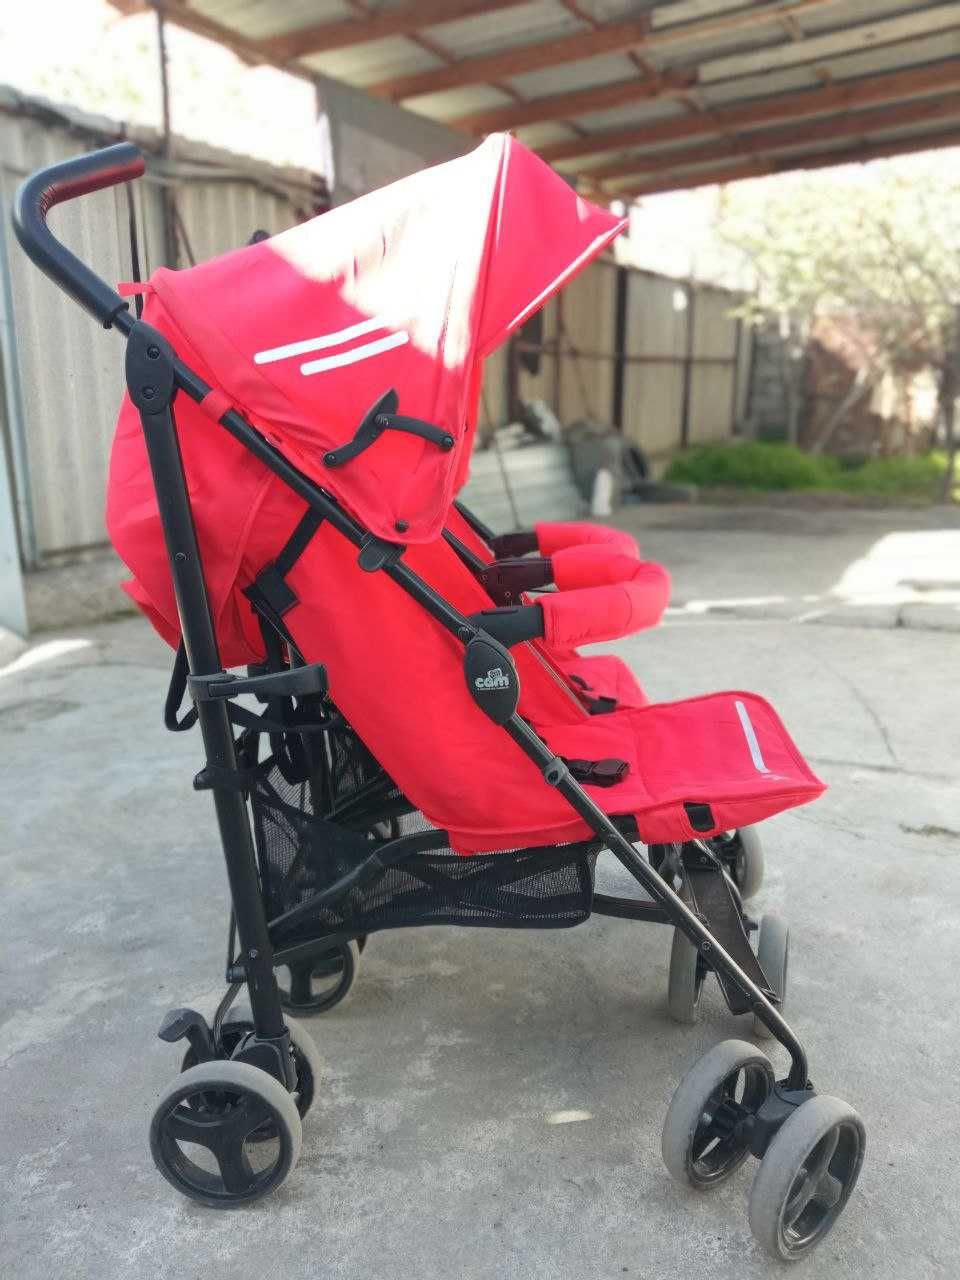 Продается двухместная детская коляска